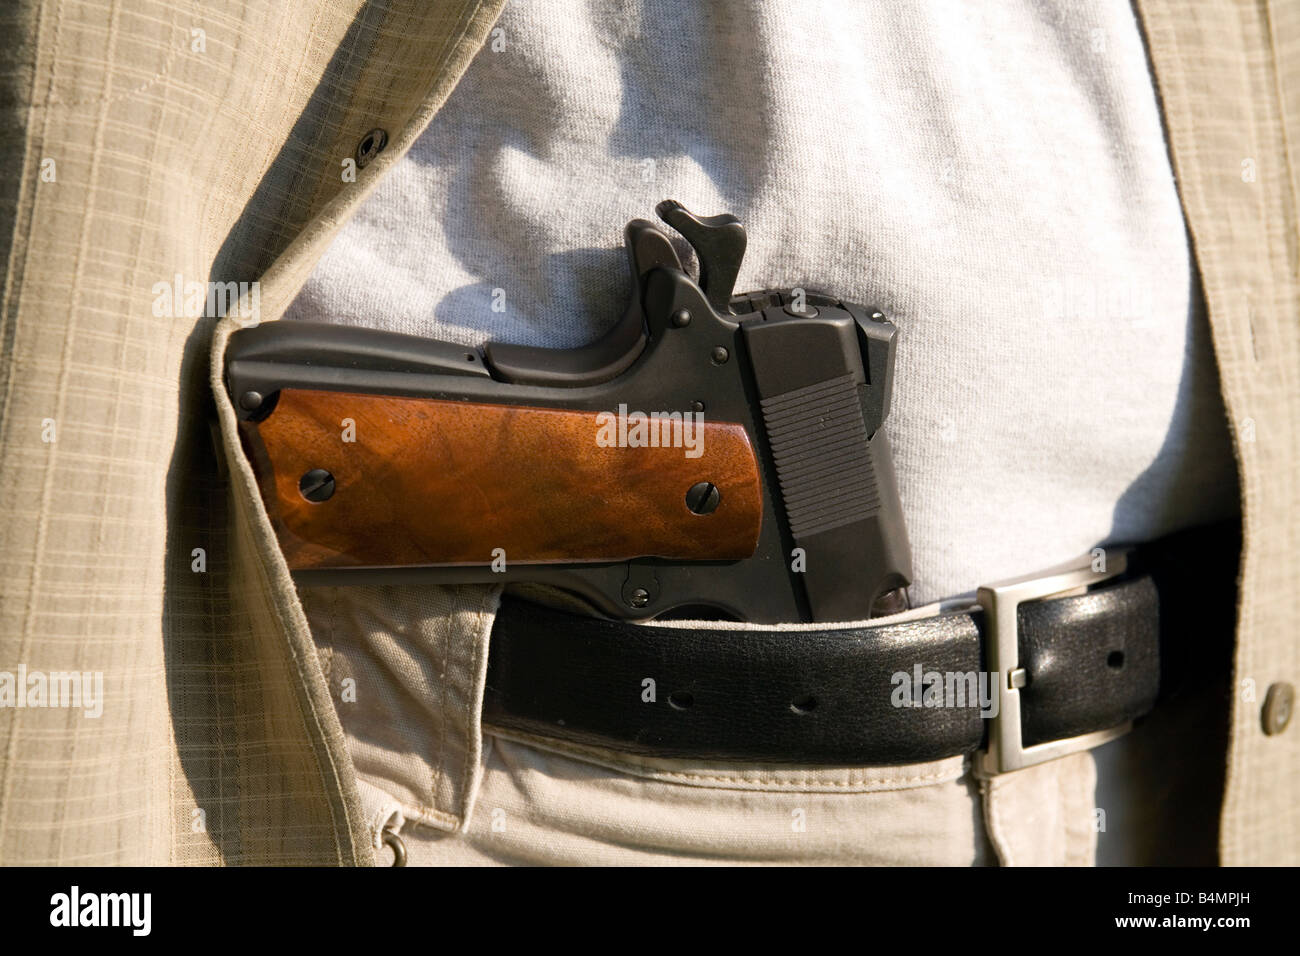 A handgun sits in a man's belt. Stock Photo